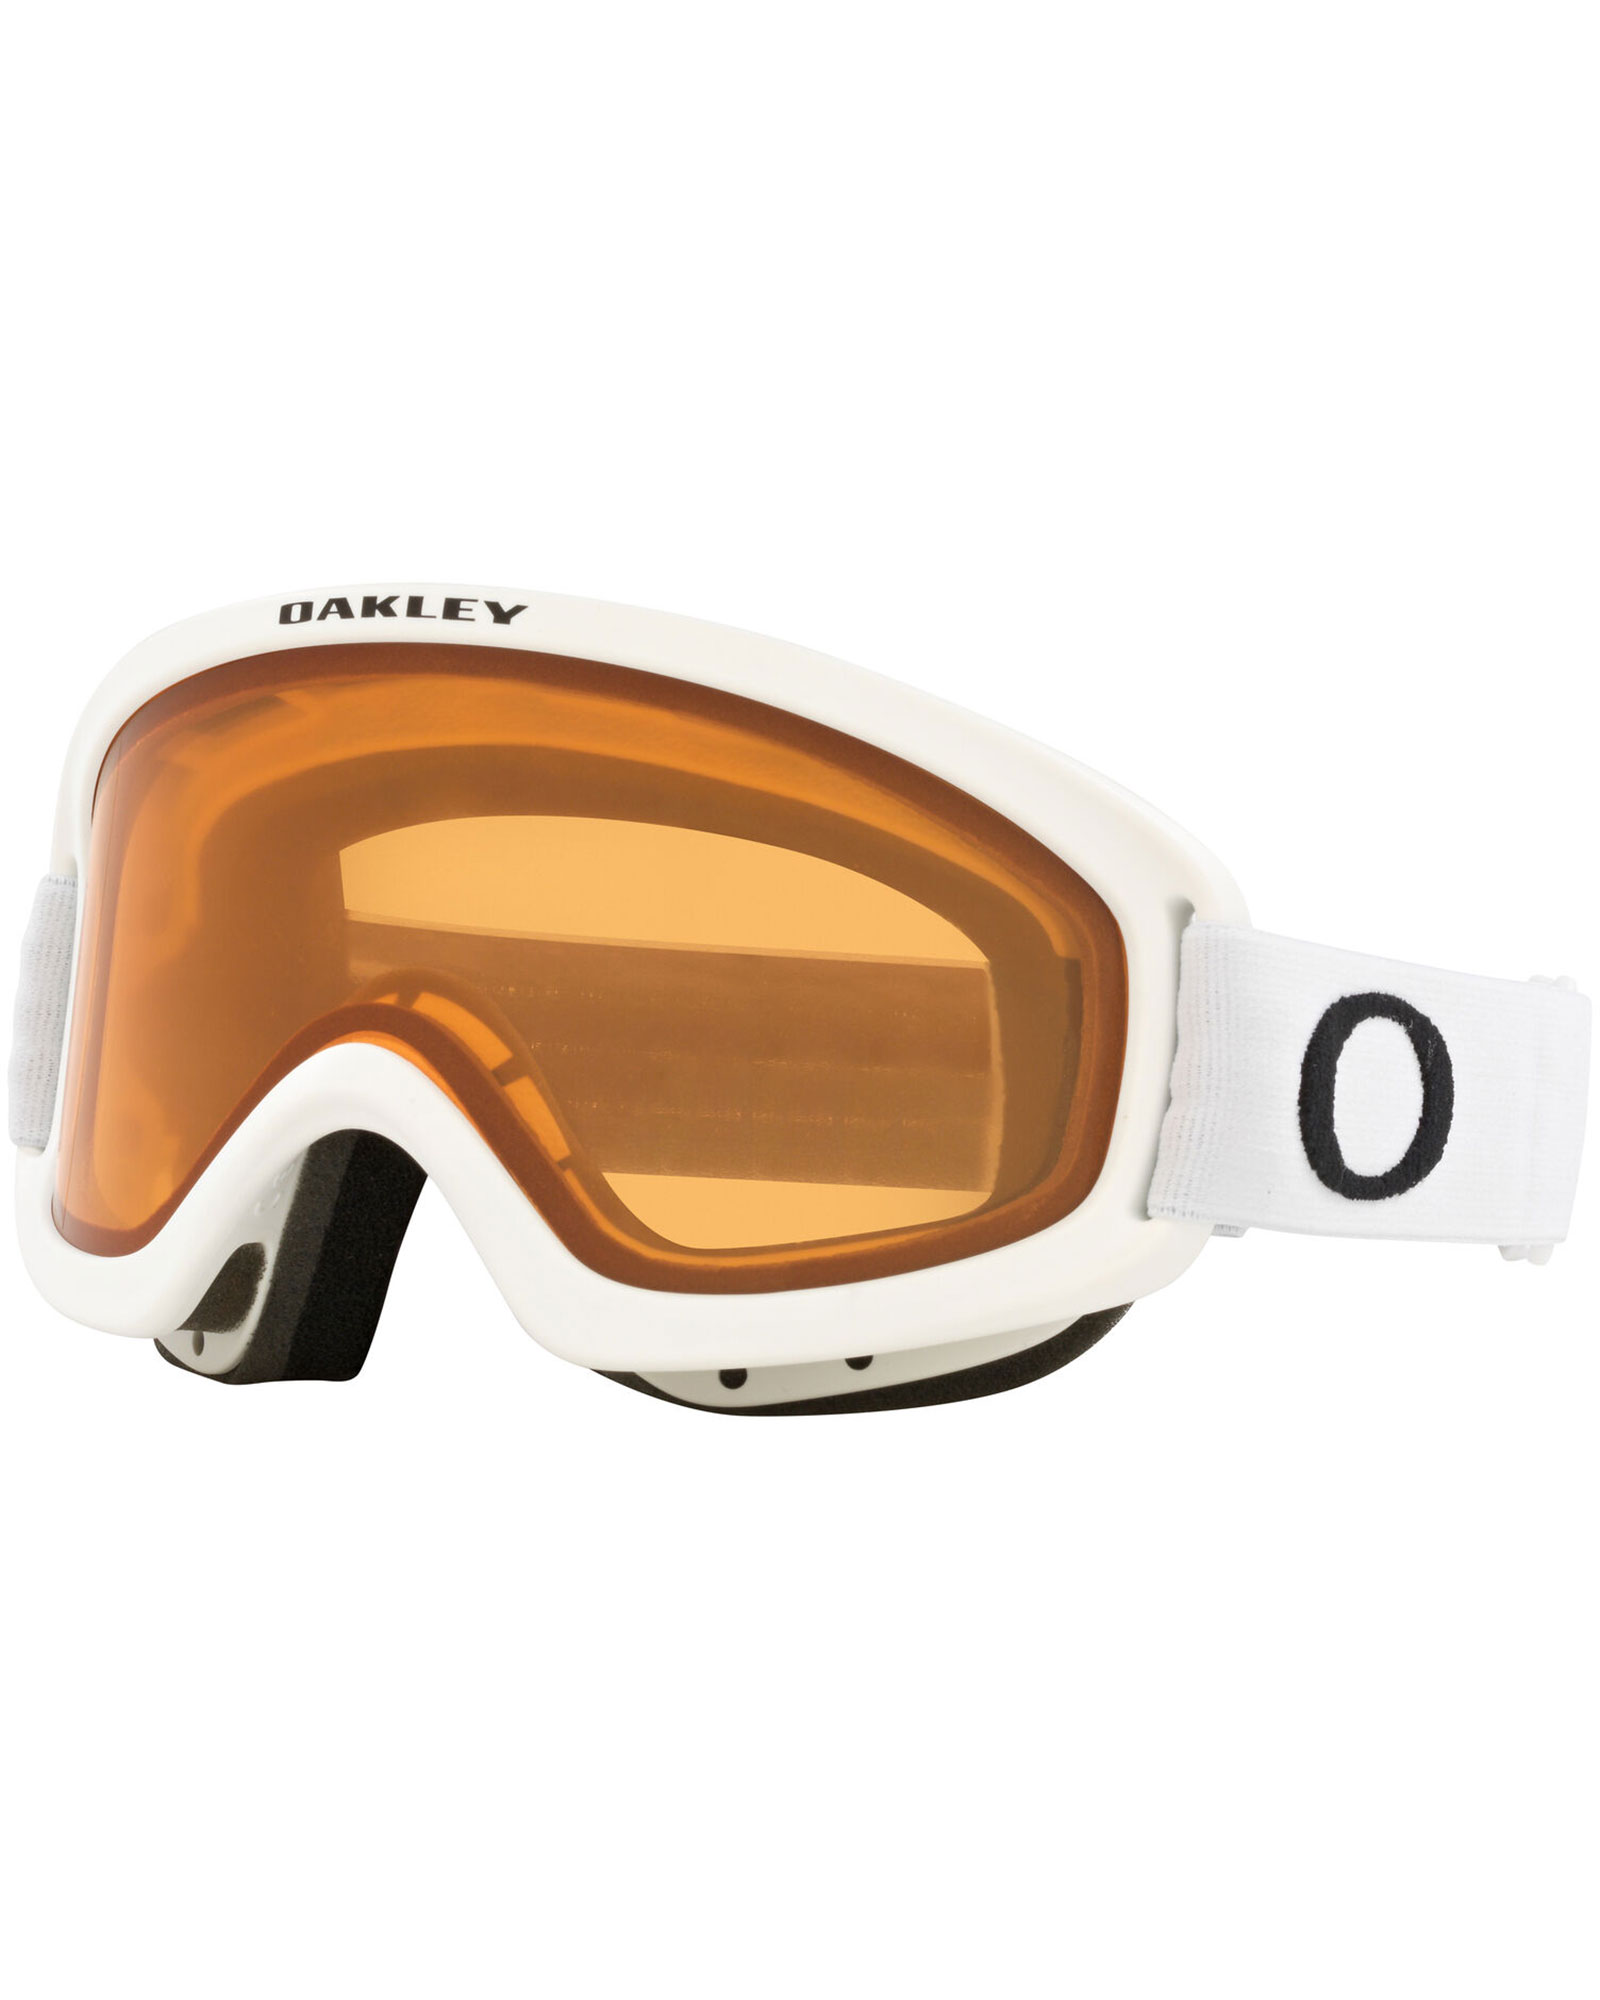 Oakley O Frame 2.0 Pro S Matte Black / Persimmon Goggles - Matte White